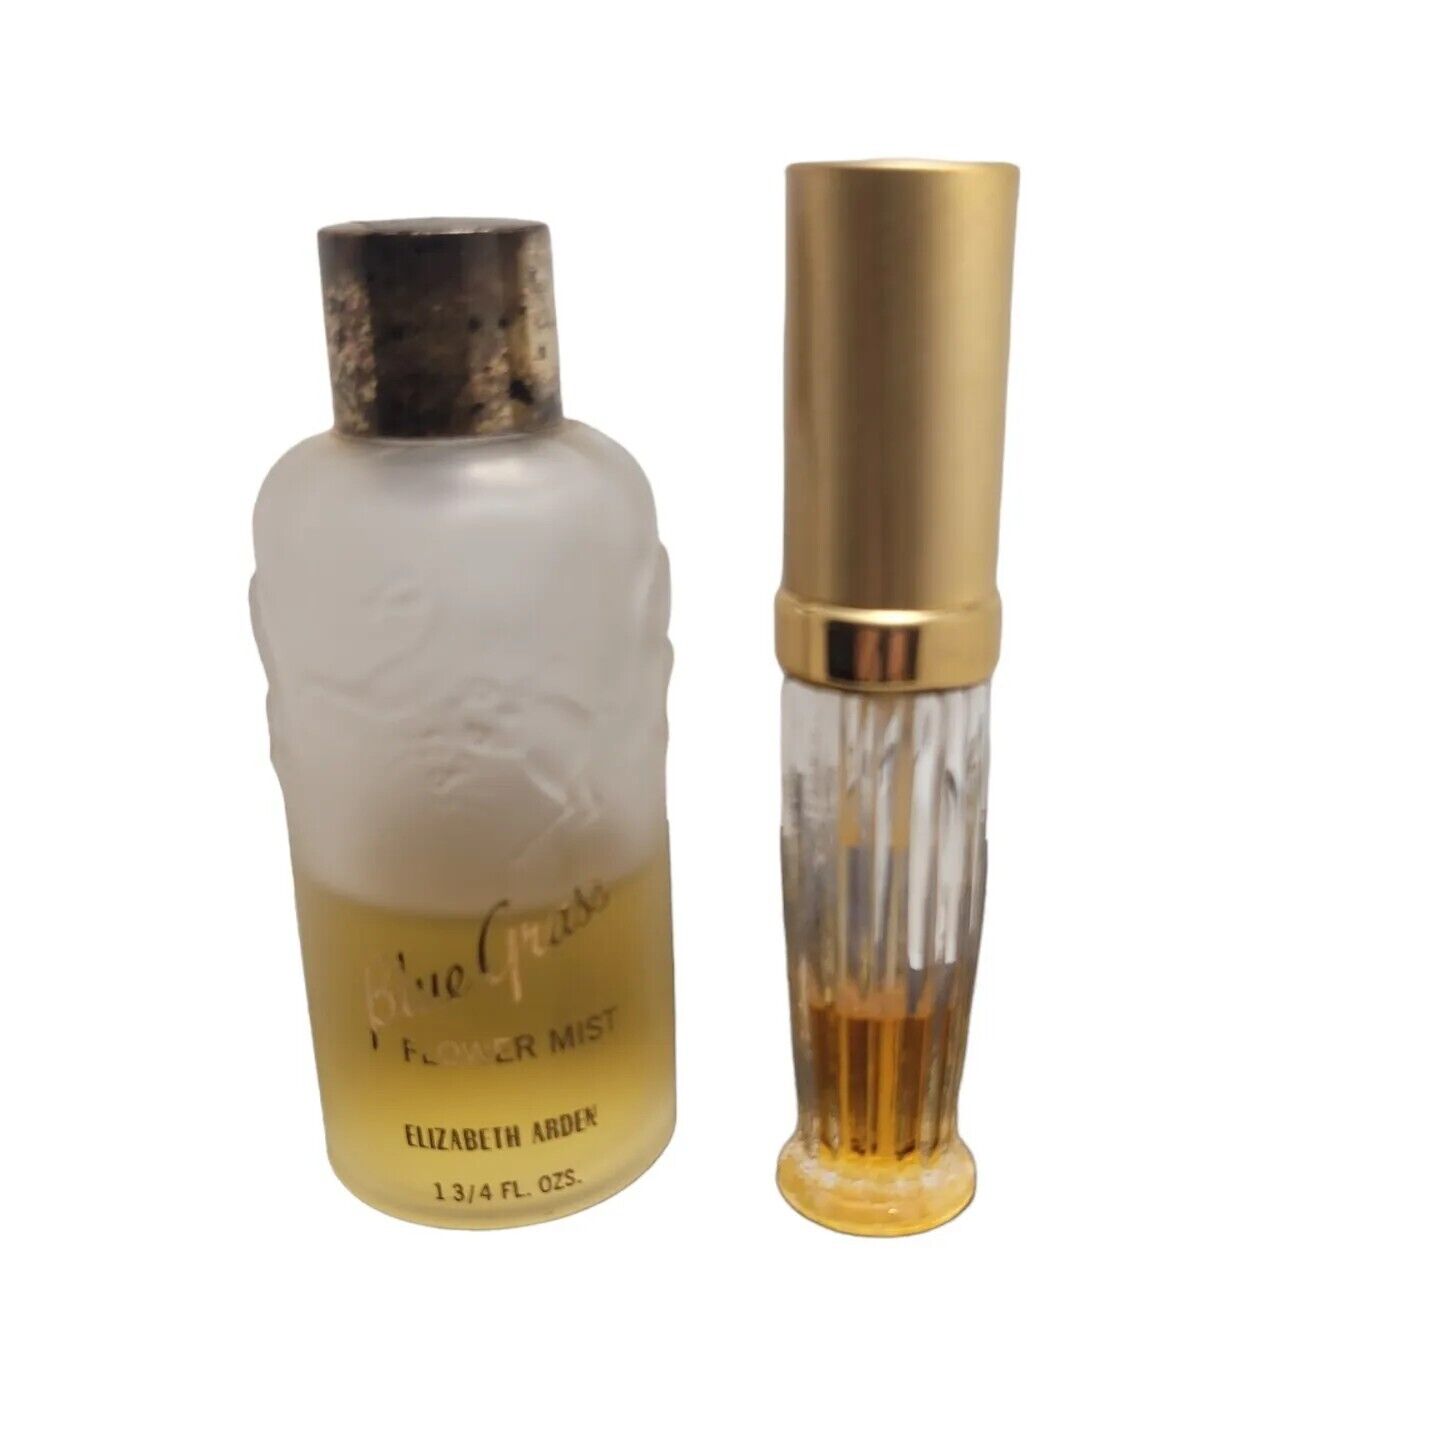 Elizabeth Arden Blue Grass Flower Perfume Mist Splash + Travel Size Open